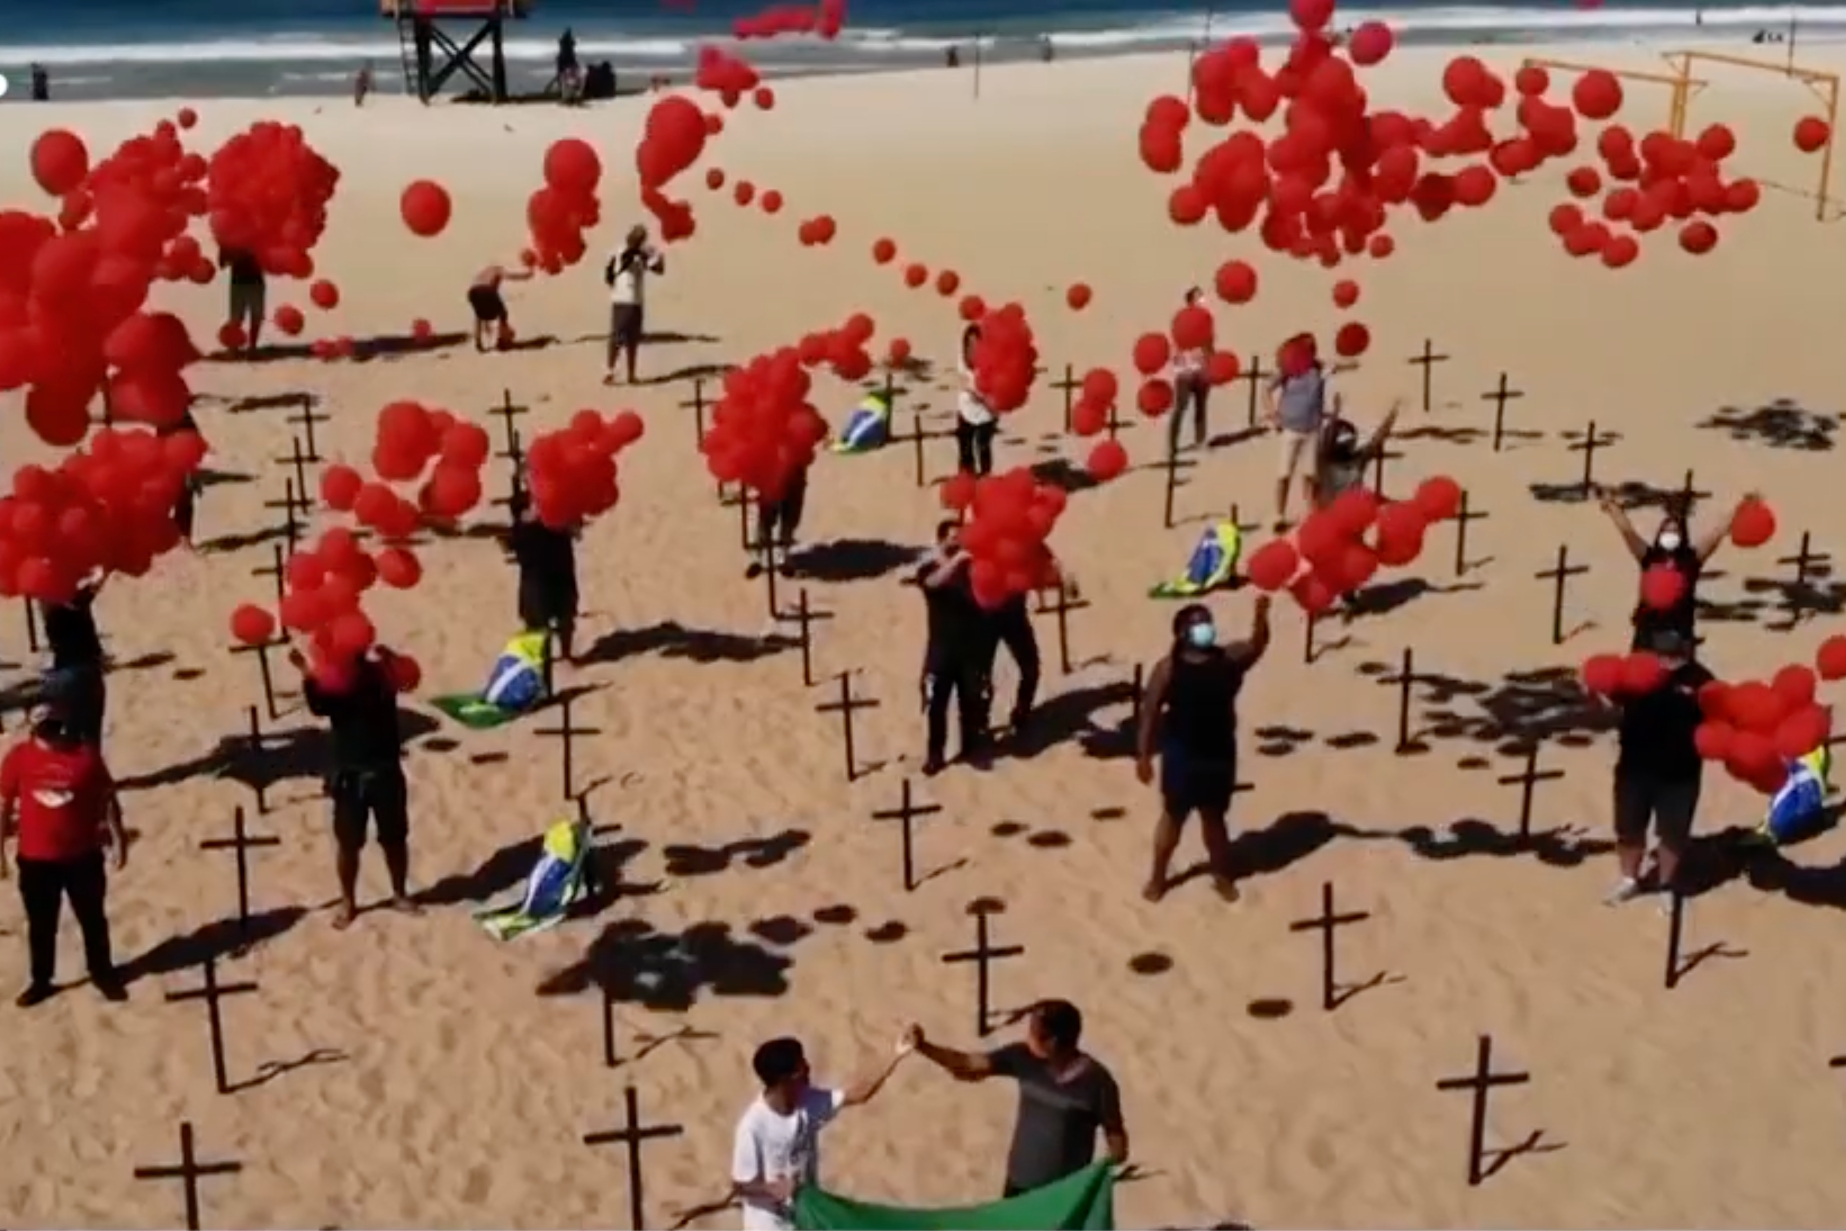  ألف بالون أحمر فوق شاطئ كوباكابانا تخليداً لذكرى 100 ألف ماتو جراء كوفيد